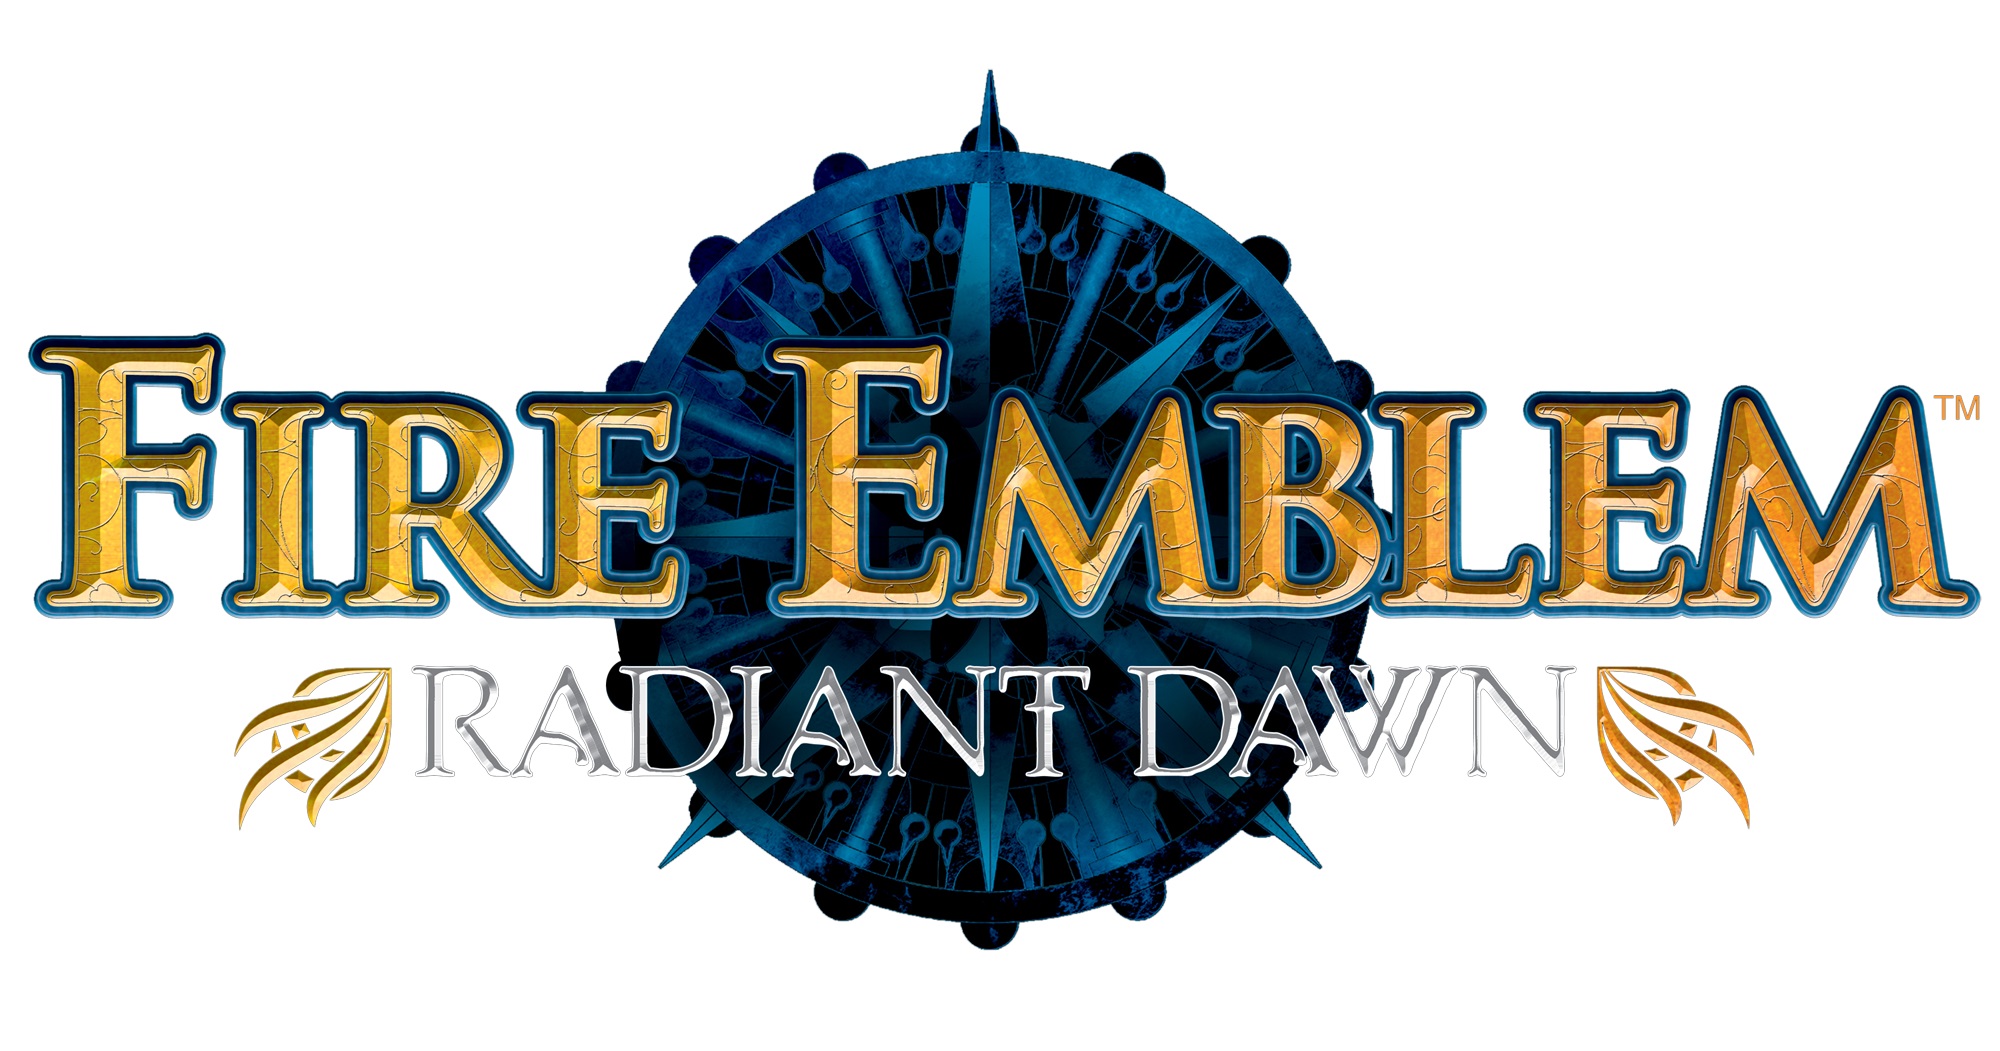 fire emblem radiant dawn max stats